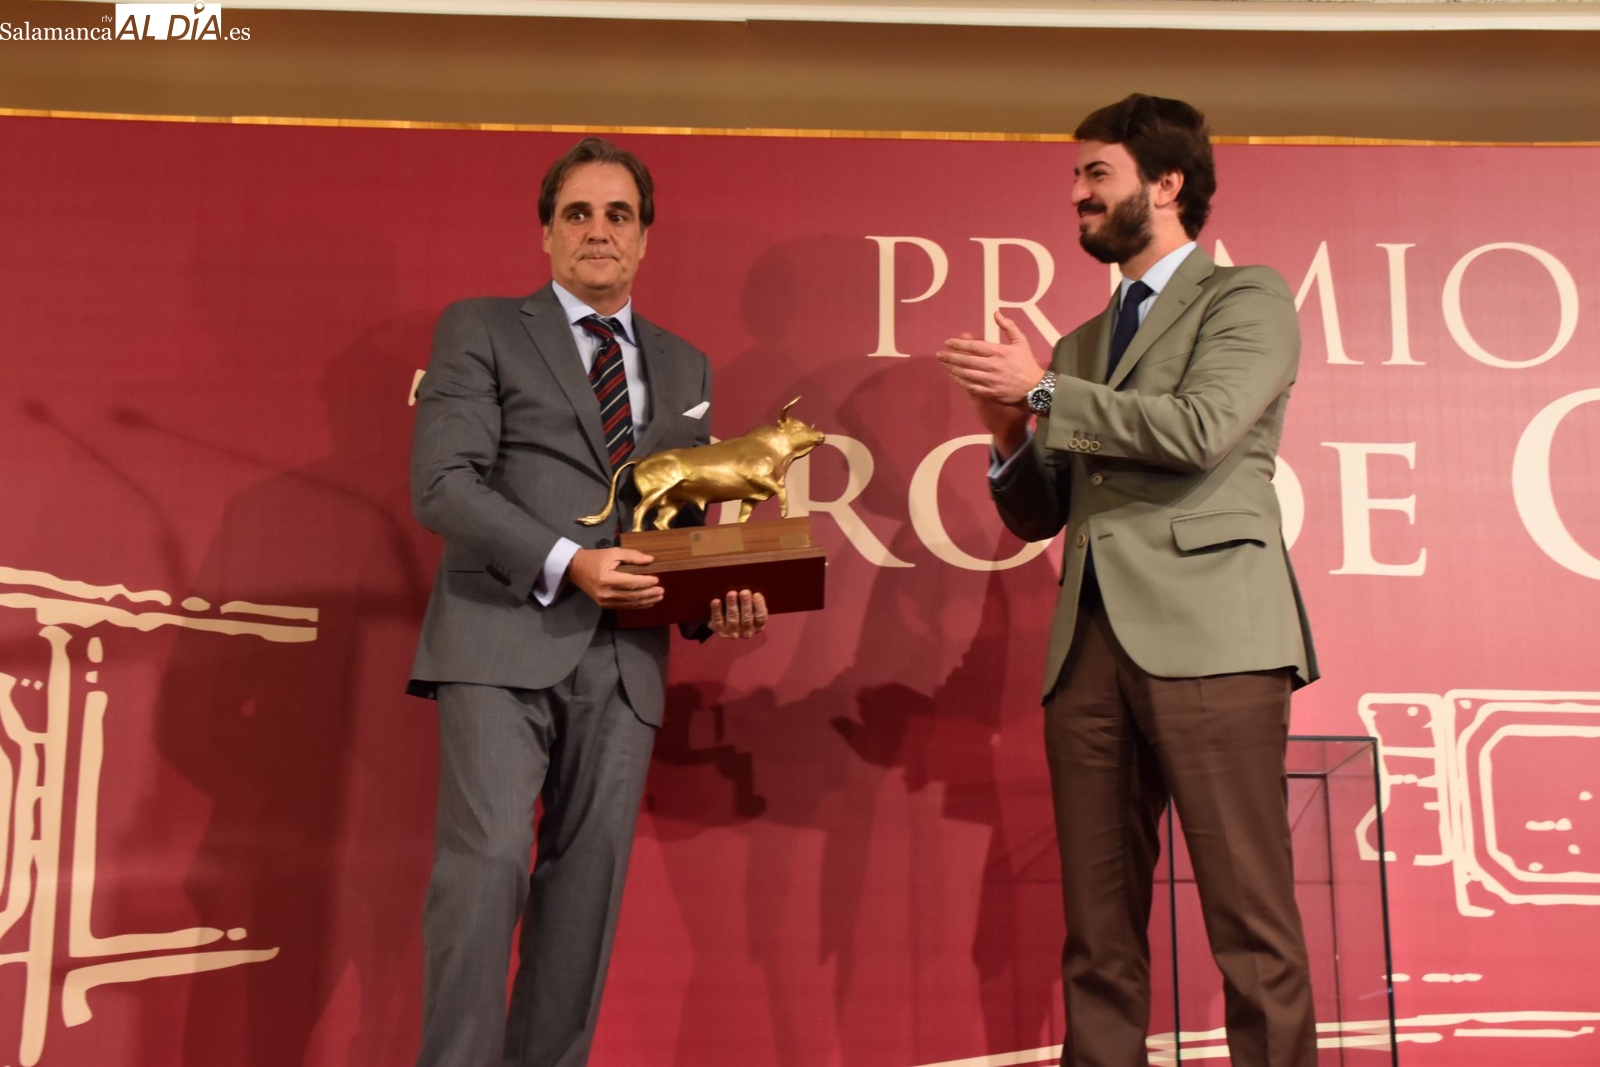 Entrega del premio ‘Toro de Oro’ en su XLVI edición en el salón de actos de la Delegación Territorial de la Junta en Salamanca. Fotos: Vanesa Martins